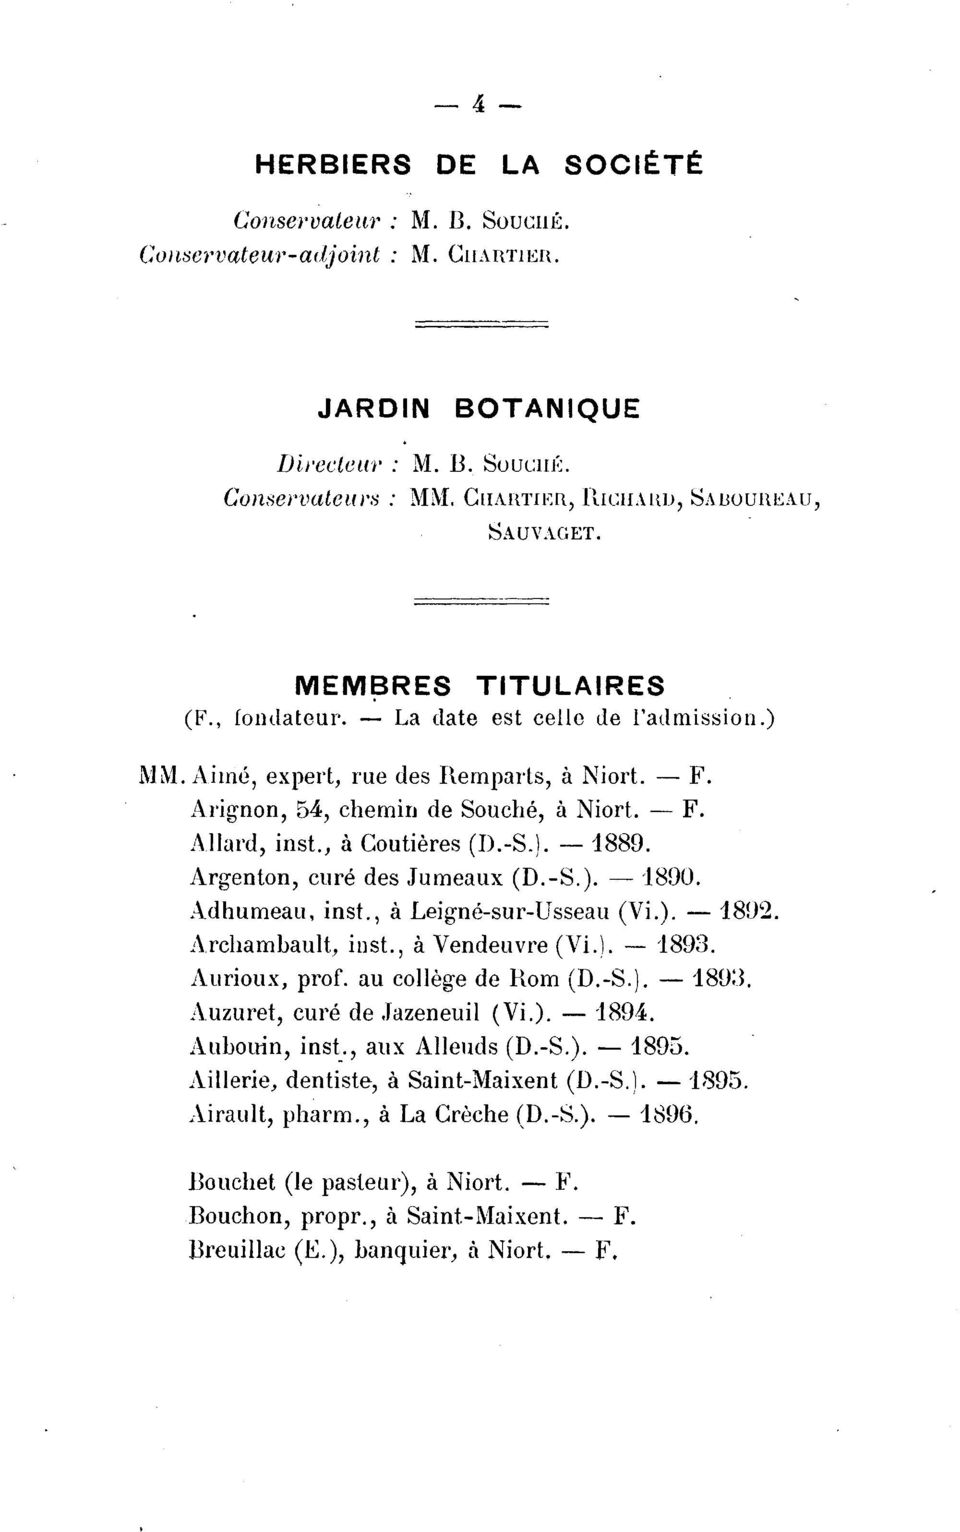 Arignon, 54, chemin de Souche, a Niort. -F. A llard, inst., a Coutieres (D.-S.). - 1889. Argenton, cure des Jumeaux (D.-S.). - '18!)0. Adhumeau, inst., a Leignc-sur-Usseau (Vi.). -1802.